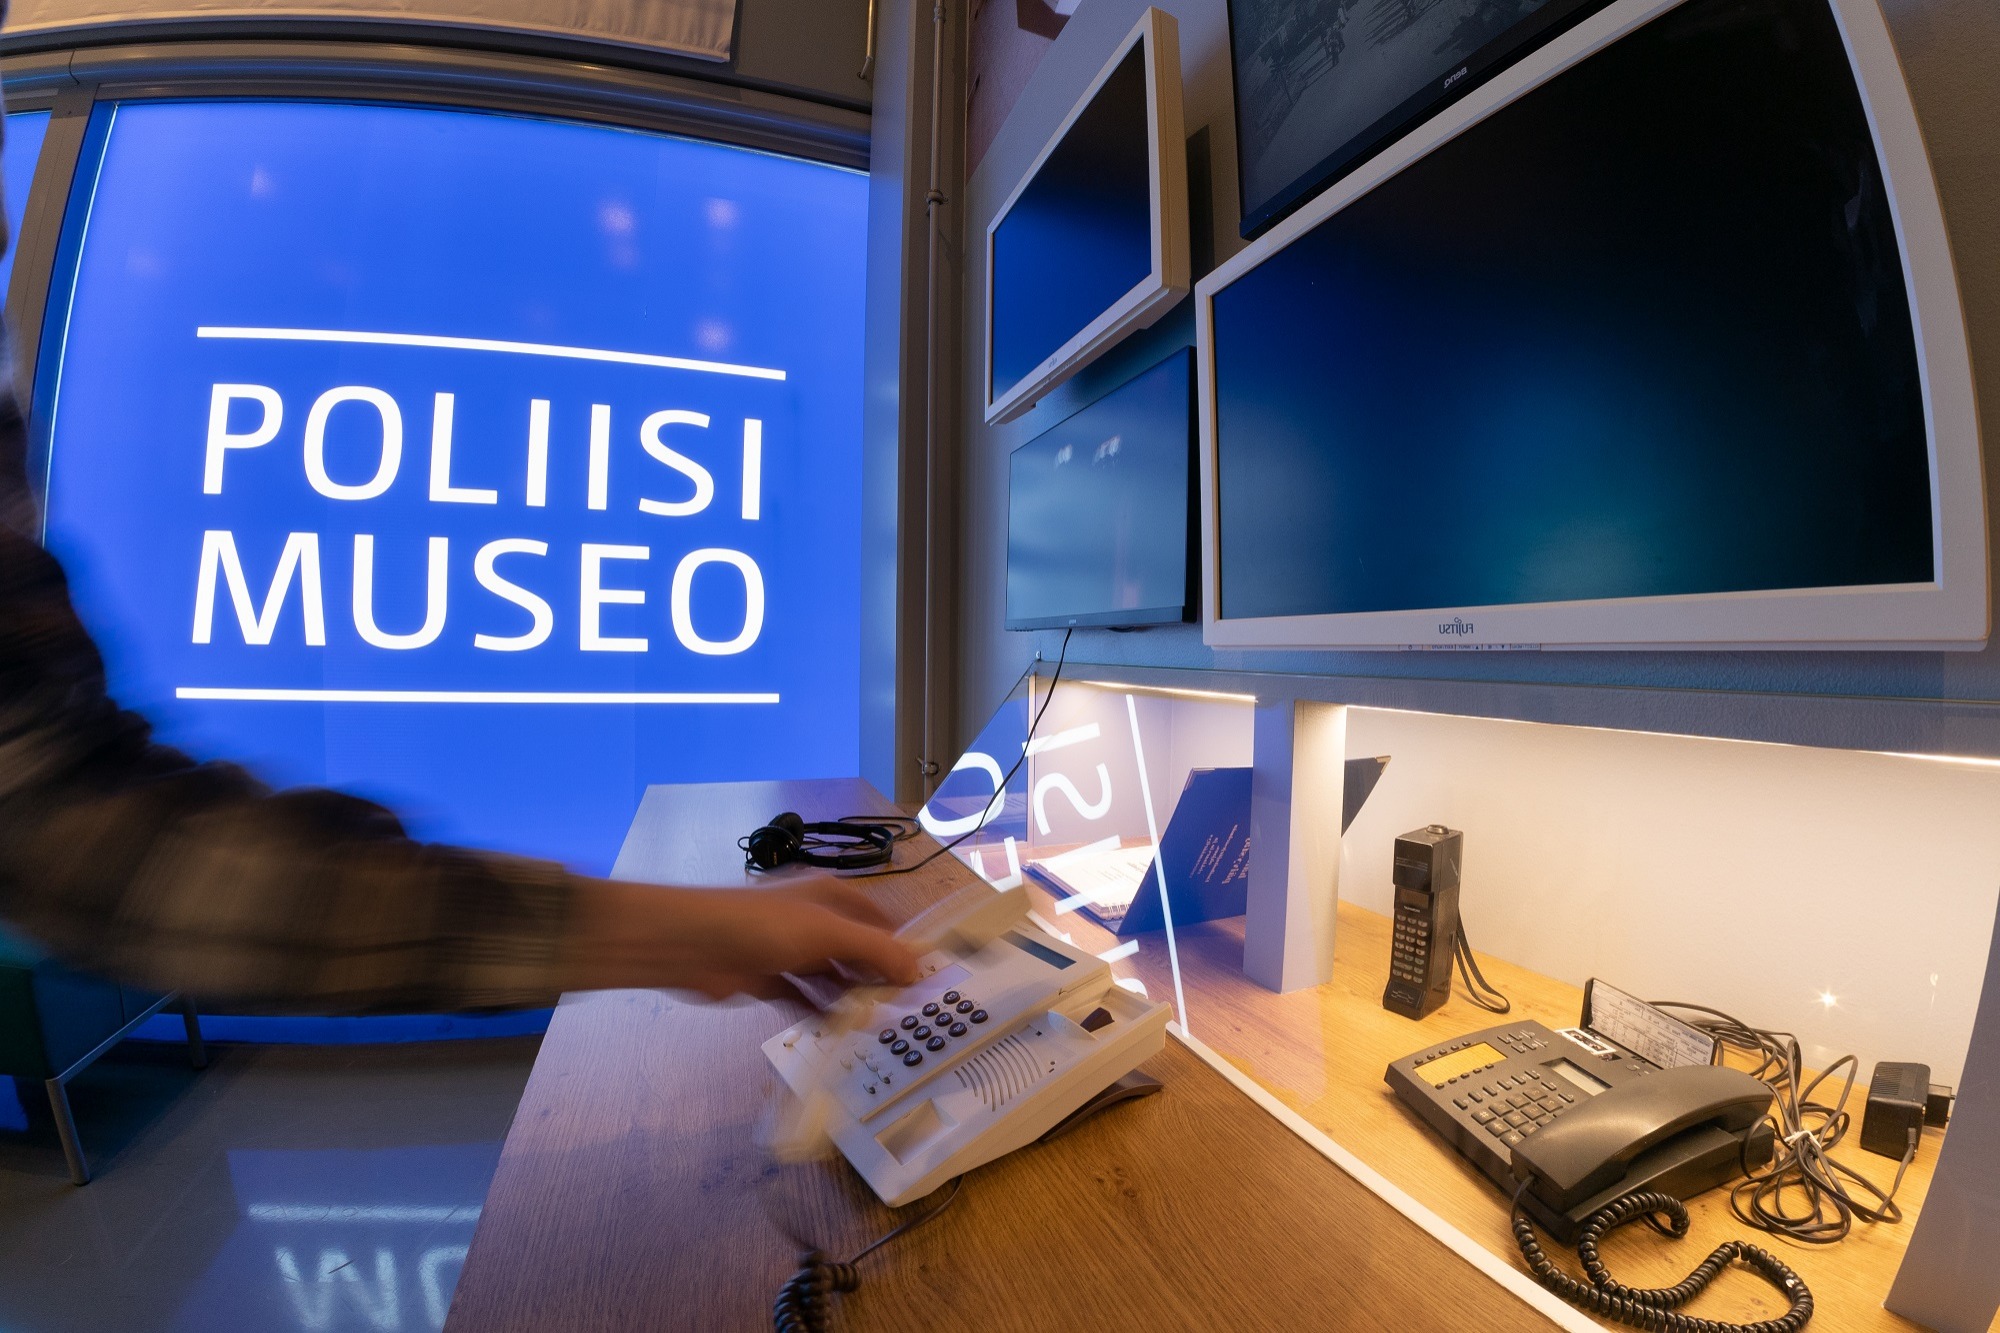 På bilden syns en hand som lyfter en telefon från bordet. I bakgrunden finns texten ”Poliisimuseo” (Polismuseet). Bild Polismuseet, Jarkko Järvinen